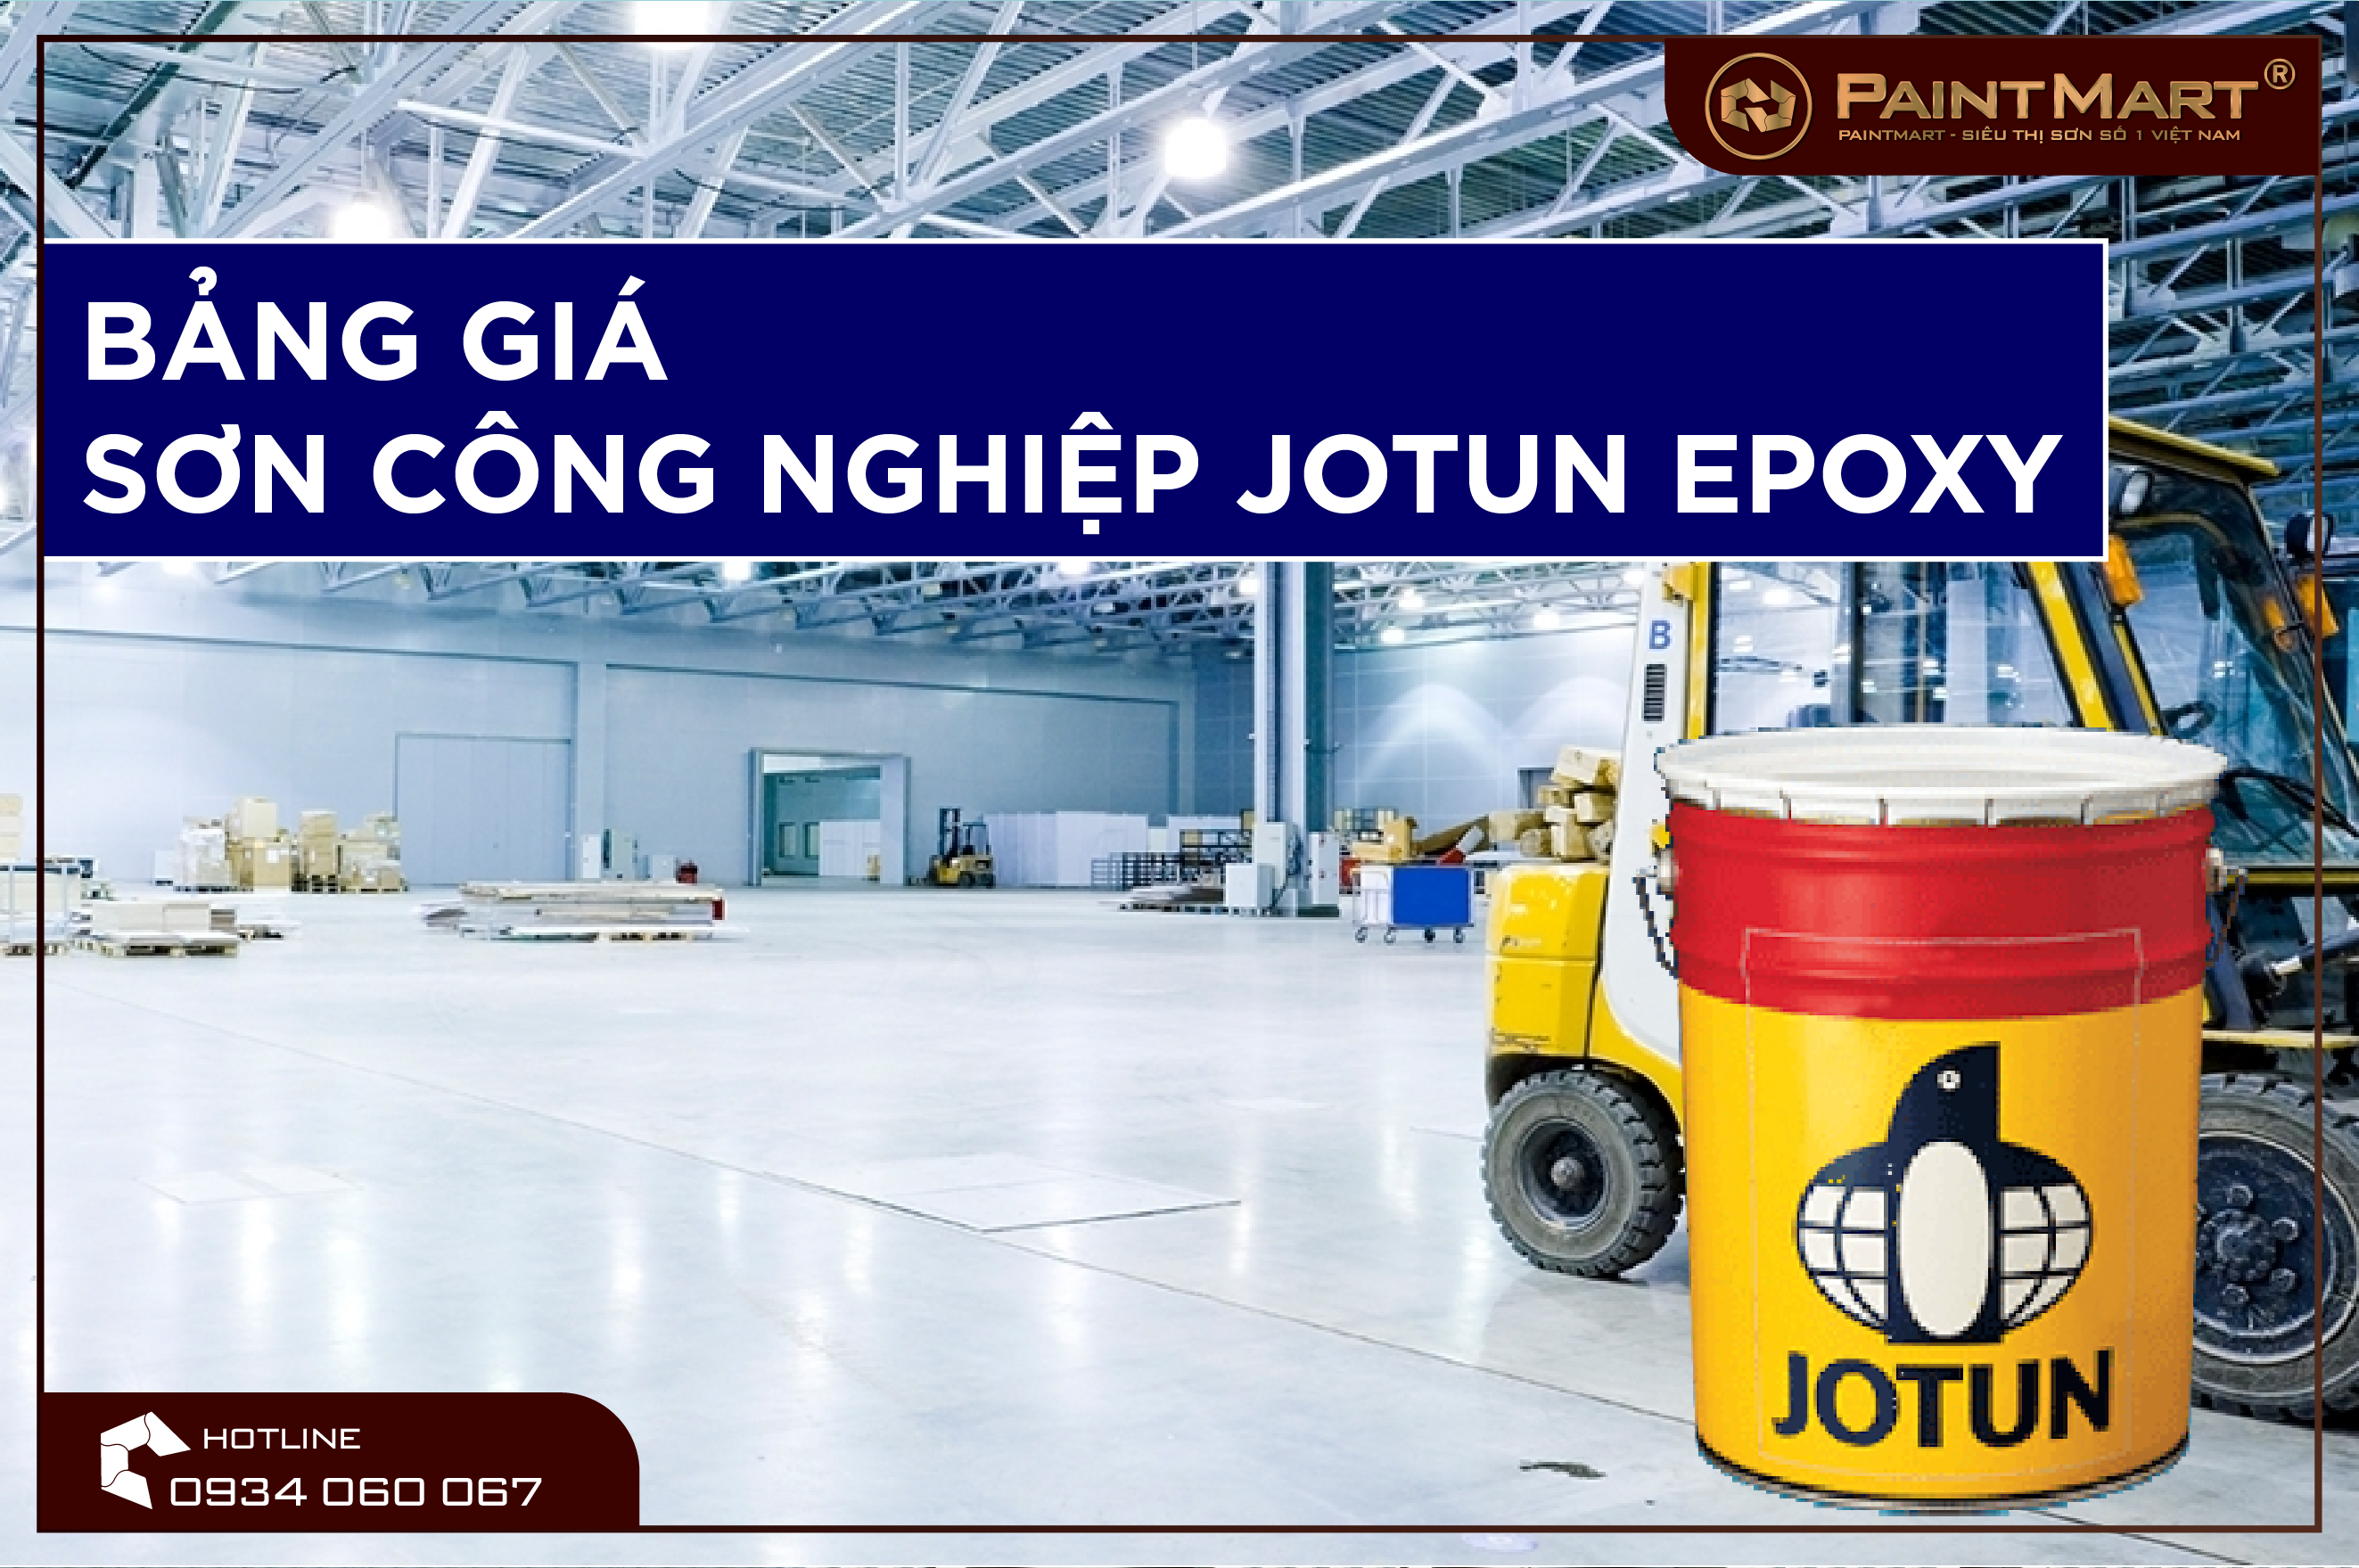 Báo giá sơn công nghiệp Jotun Epoxy sẽ giúp bạn chọn đúng sản phẩm mà bạn cần với giá cả hợp lý. Đừng bỏ lỡ cơ hội xem hình ảnh liên quan đến các báo giá sơn công nghiệp Jotun Epoxy tại đây.